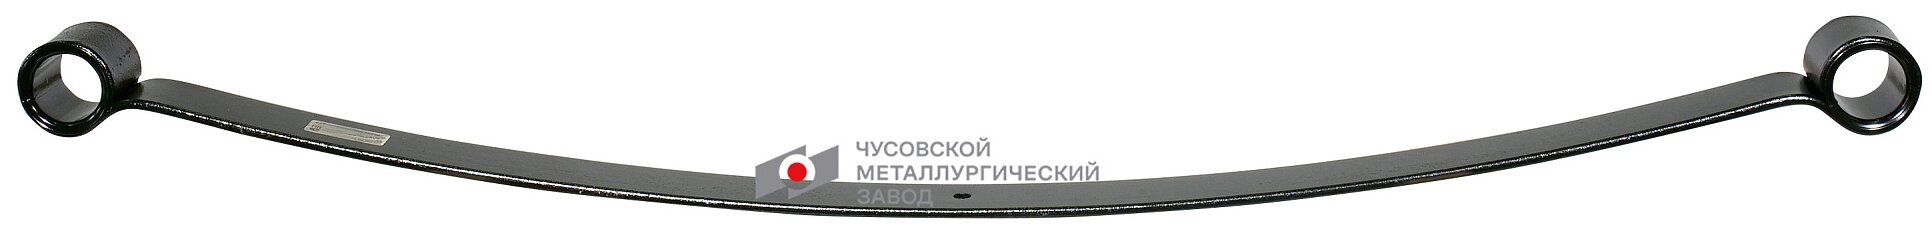 Рессорный лист №1 передней рессоры Чусовской металлургический завод 469-2902015-03